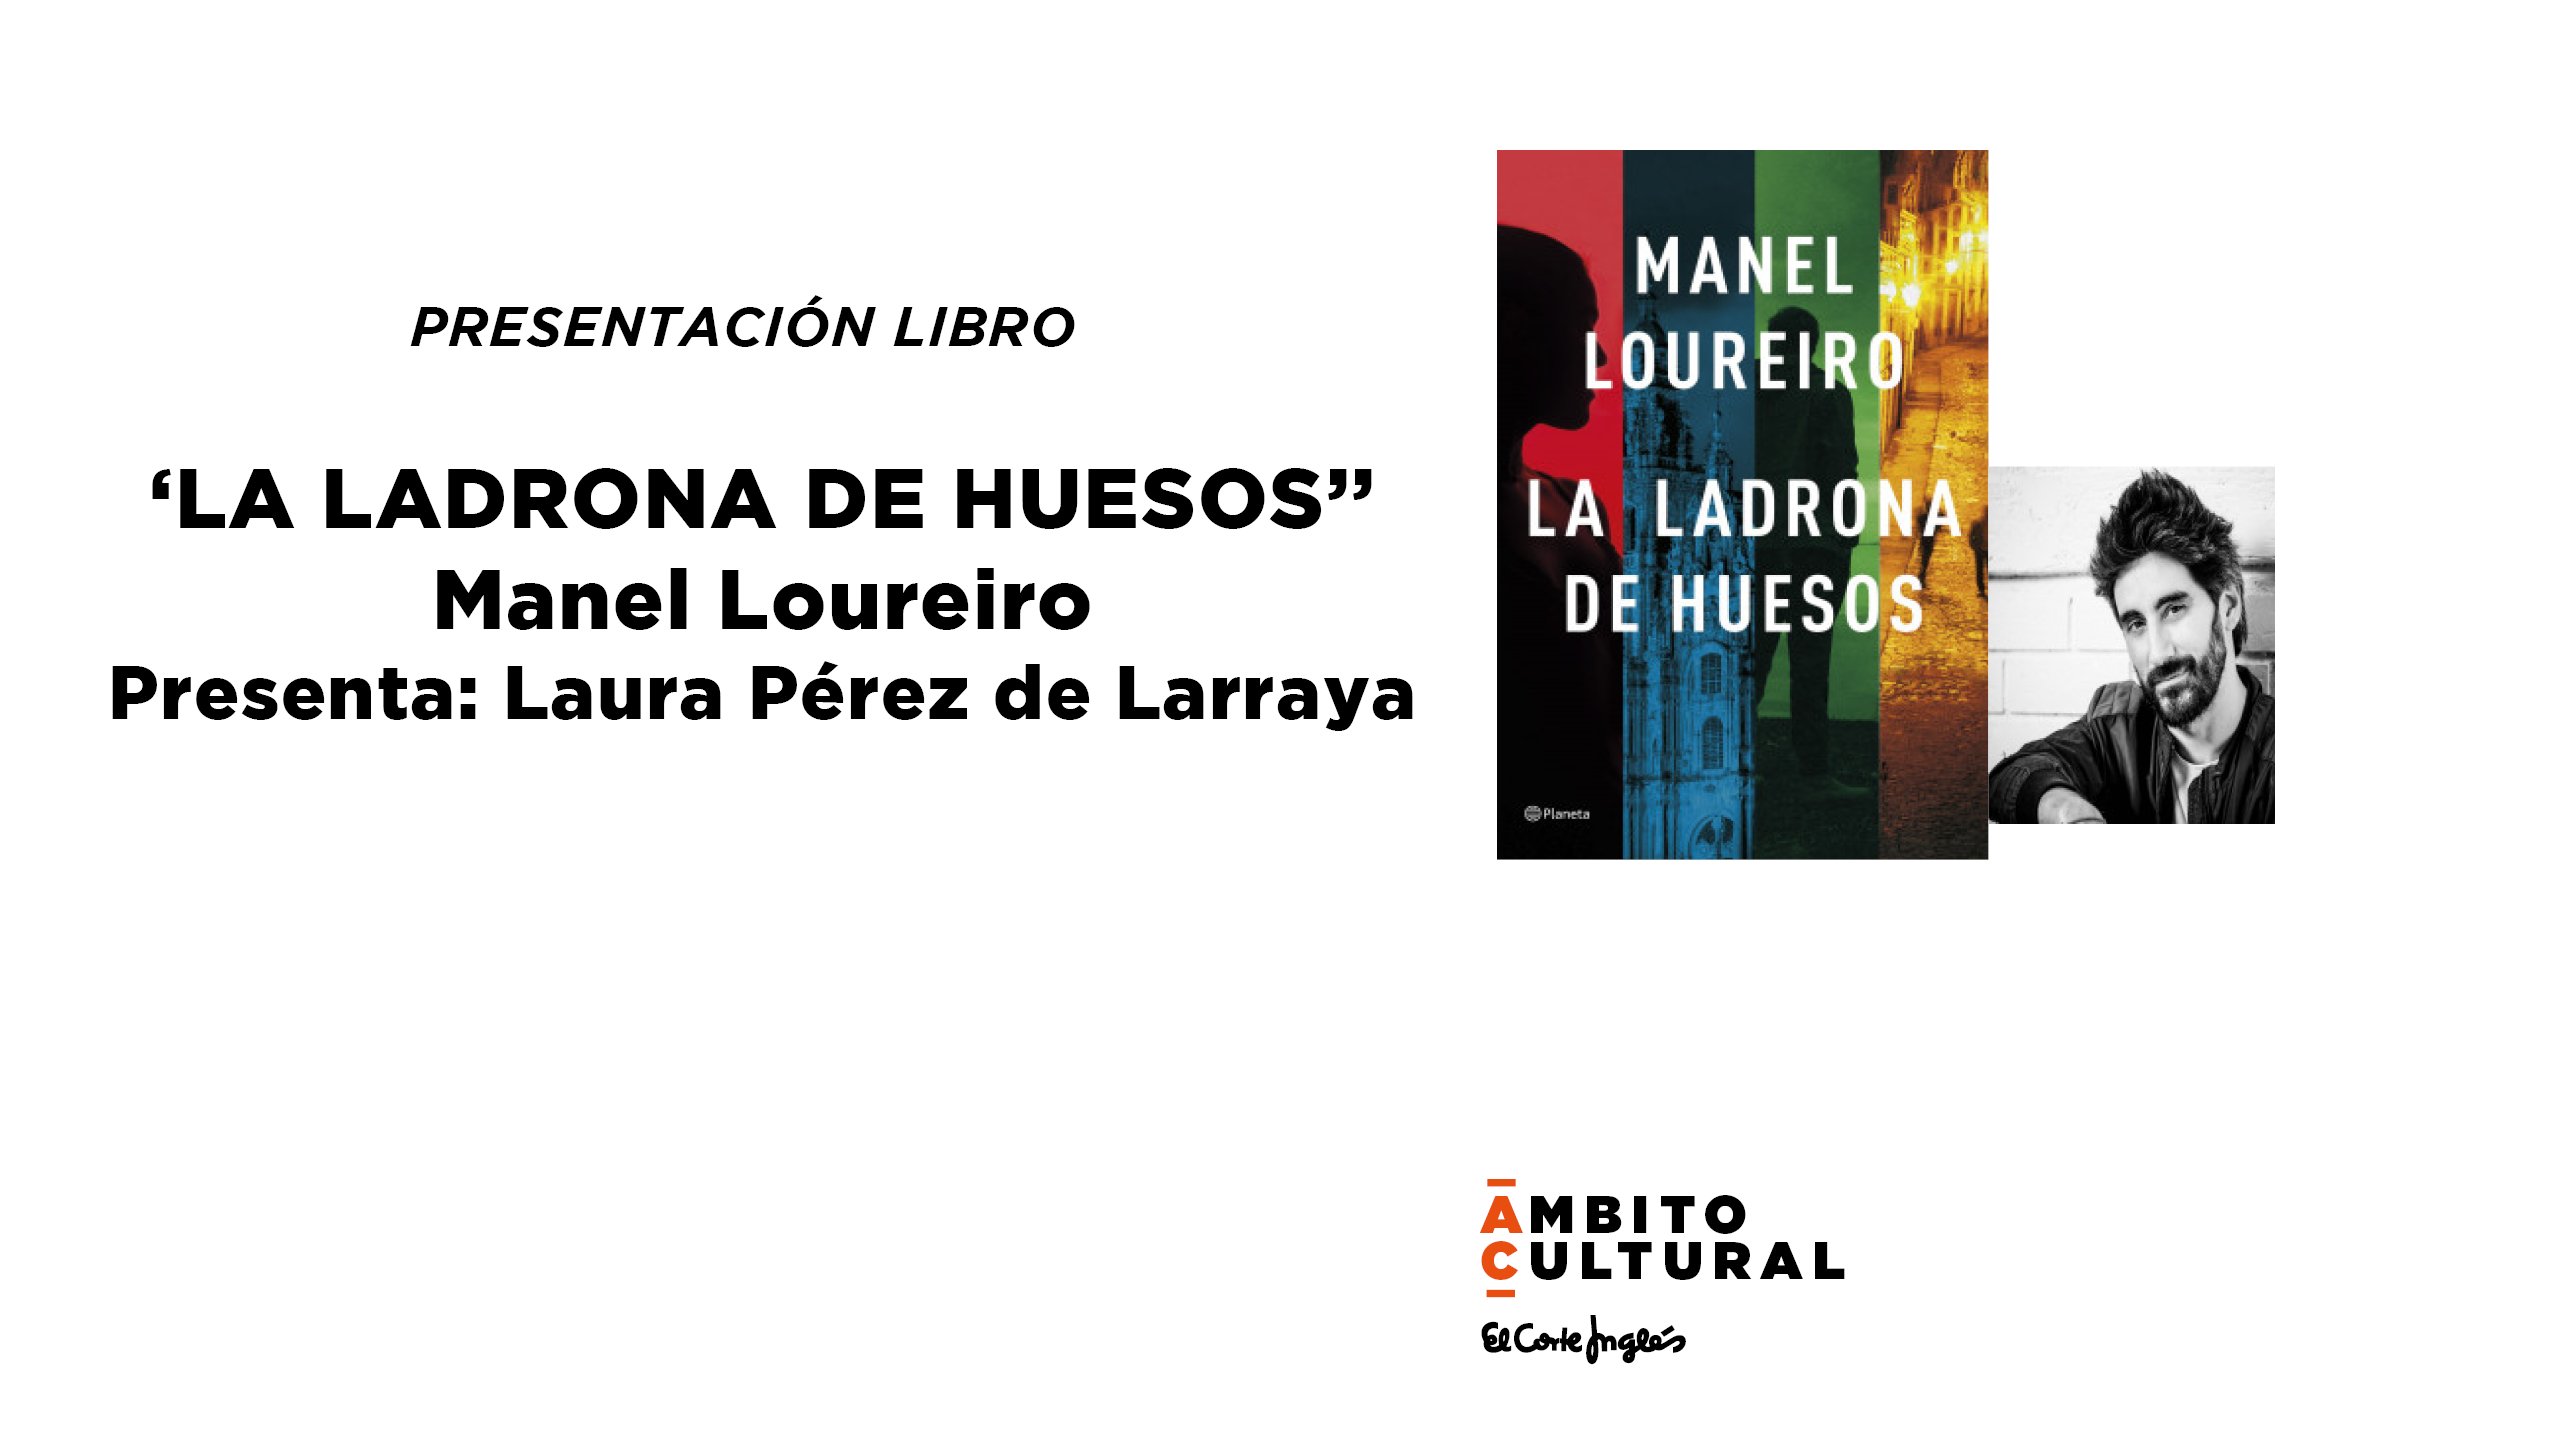 Imagen del evento PRESENTACIÓN LIBRO: "LA LADRONA DE HUESOS" DE MANEL LOUREIRO.